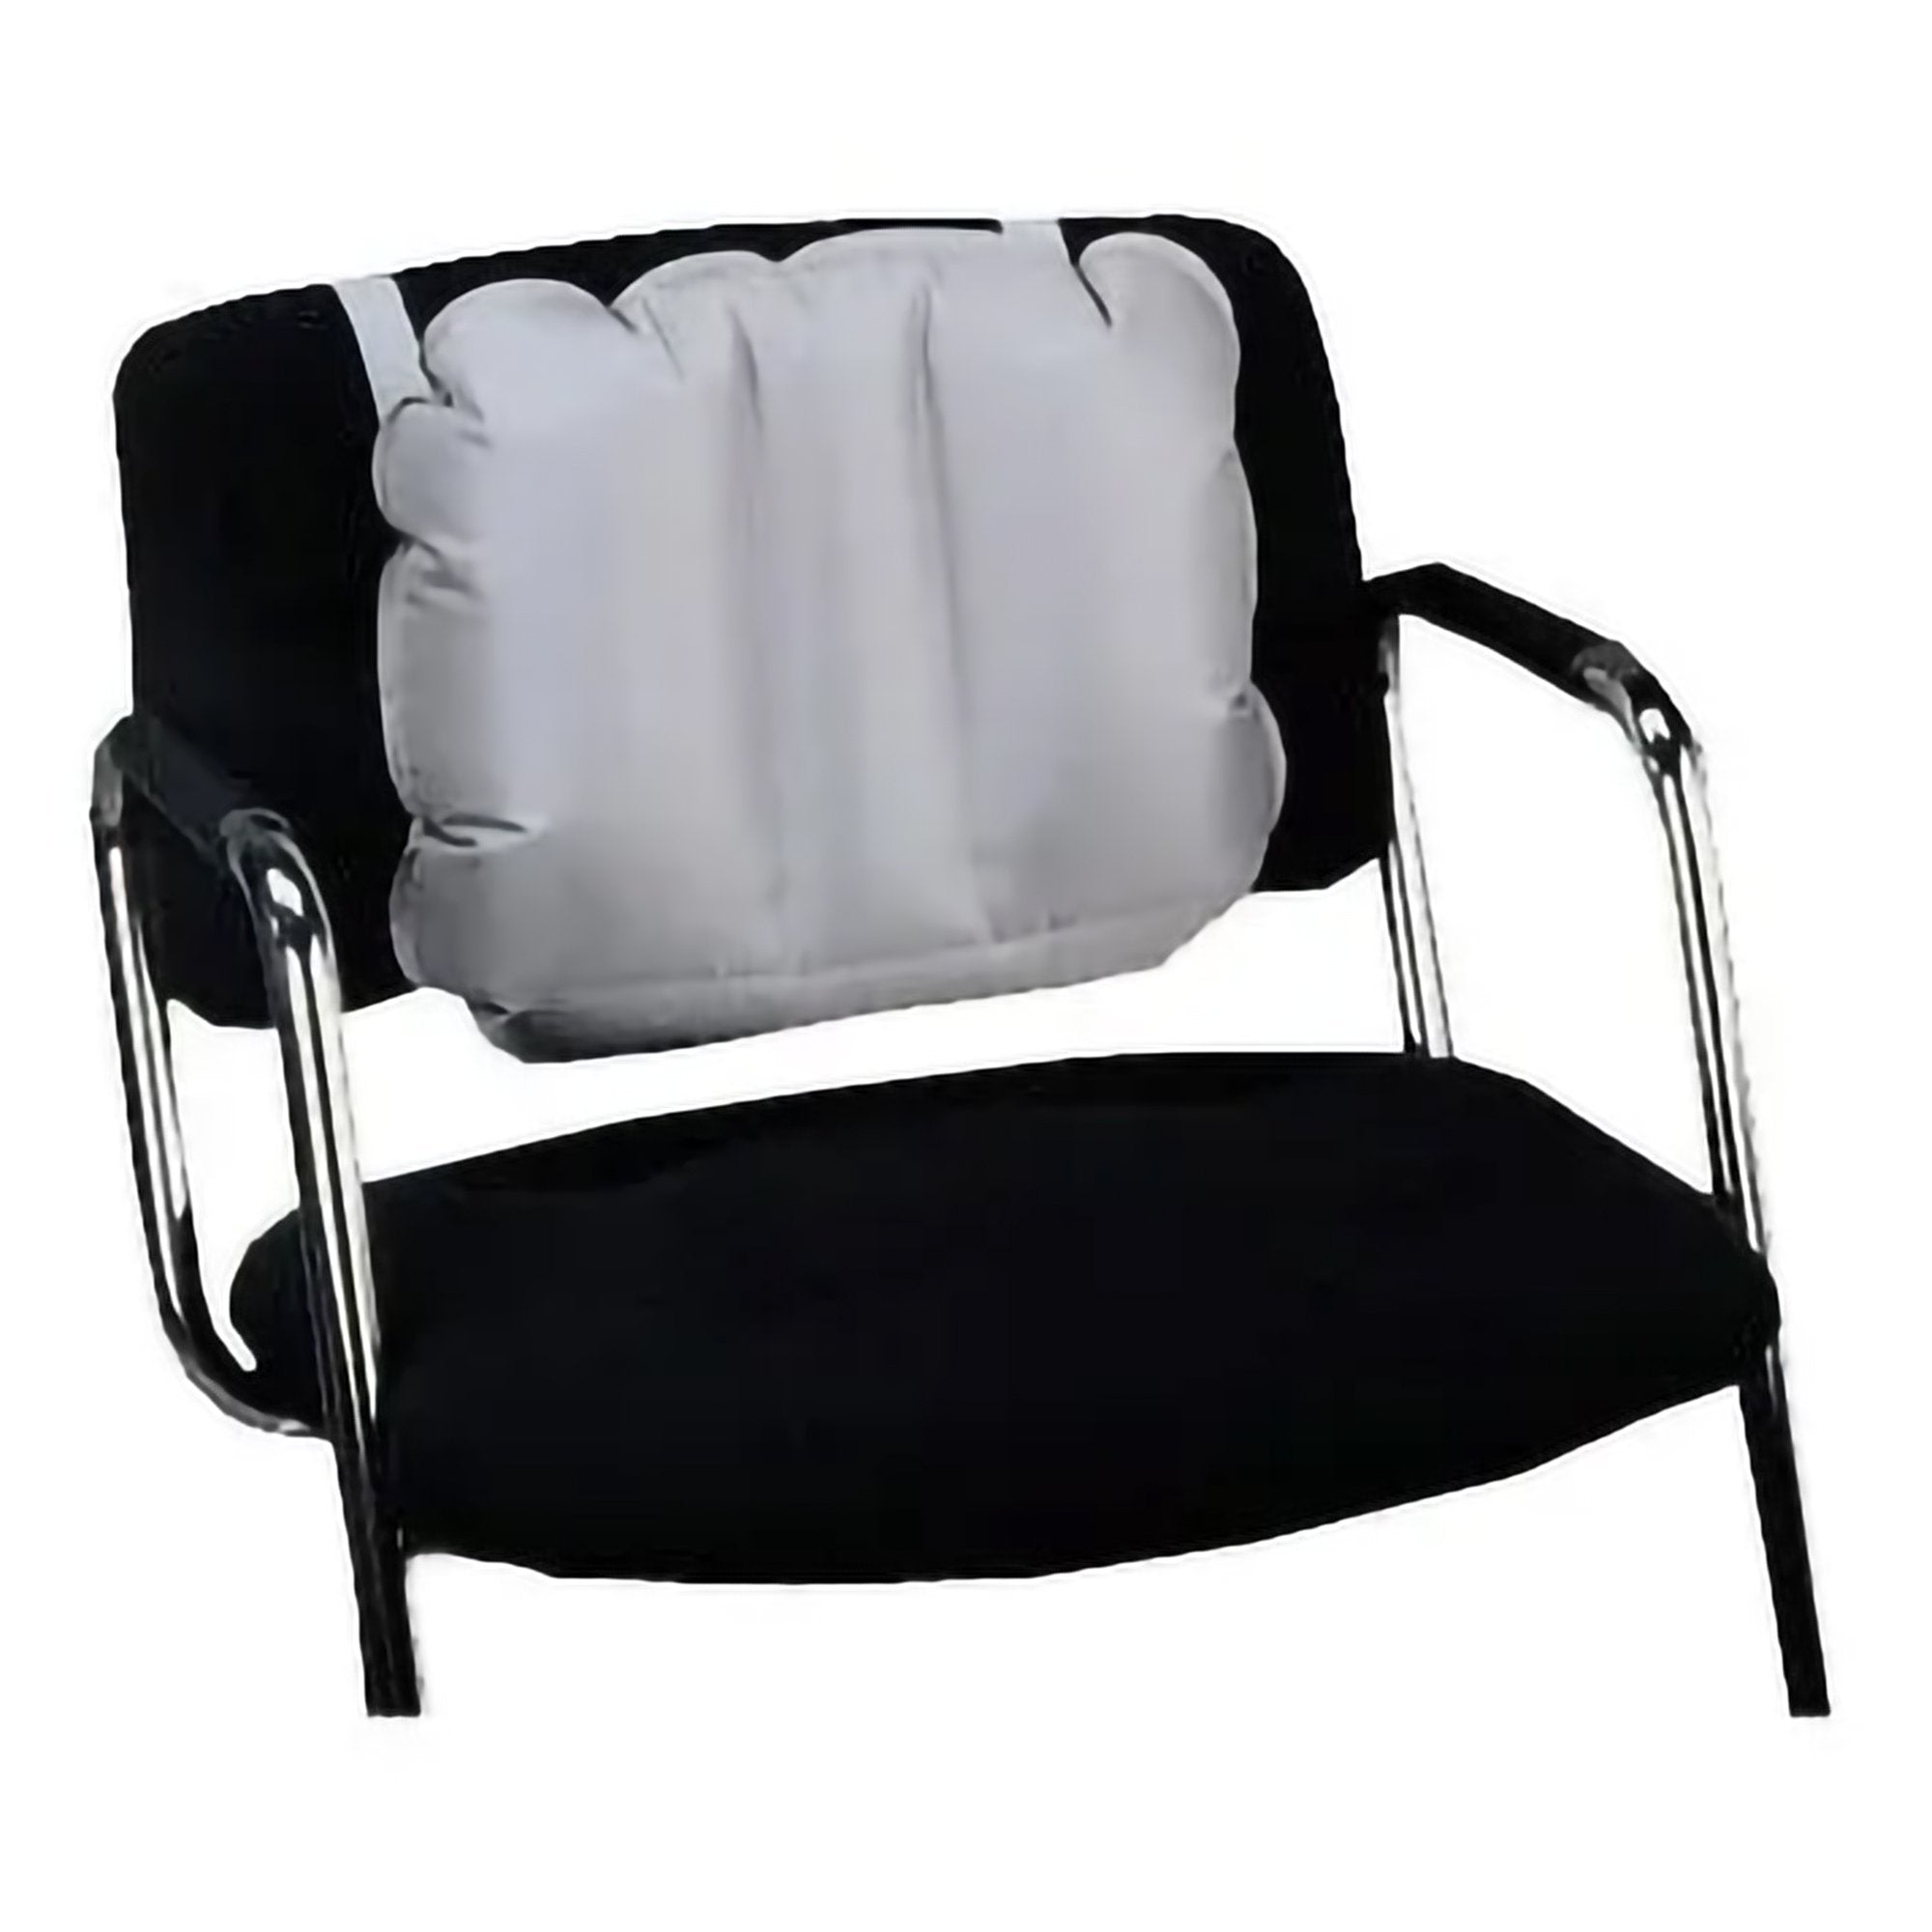 Seat Back Cushion MedicAir™ 12 W X 18 D Inch Air Cells